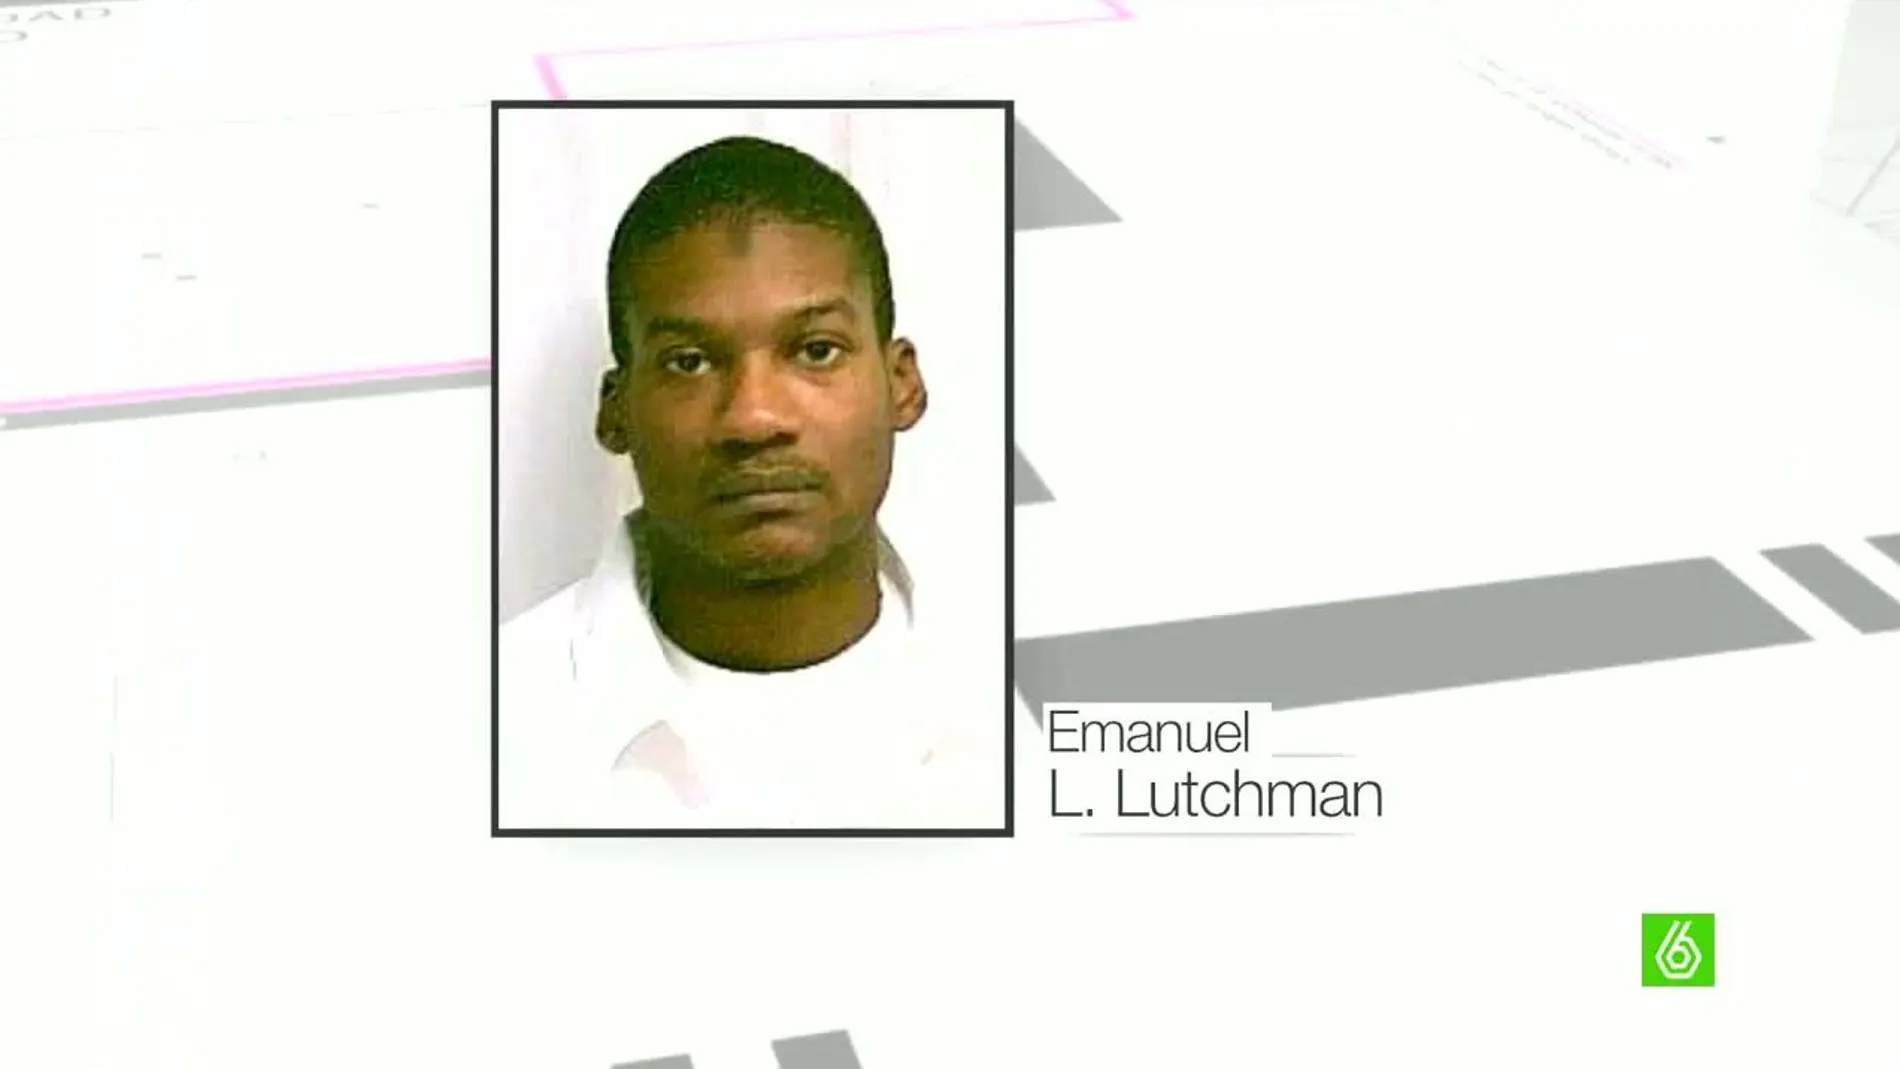 Emanuel L. Luchtman, yihadista detenido en Rochester